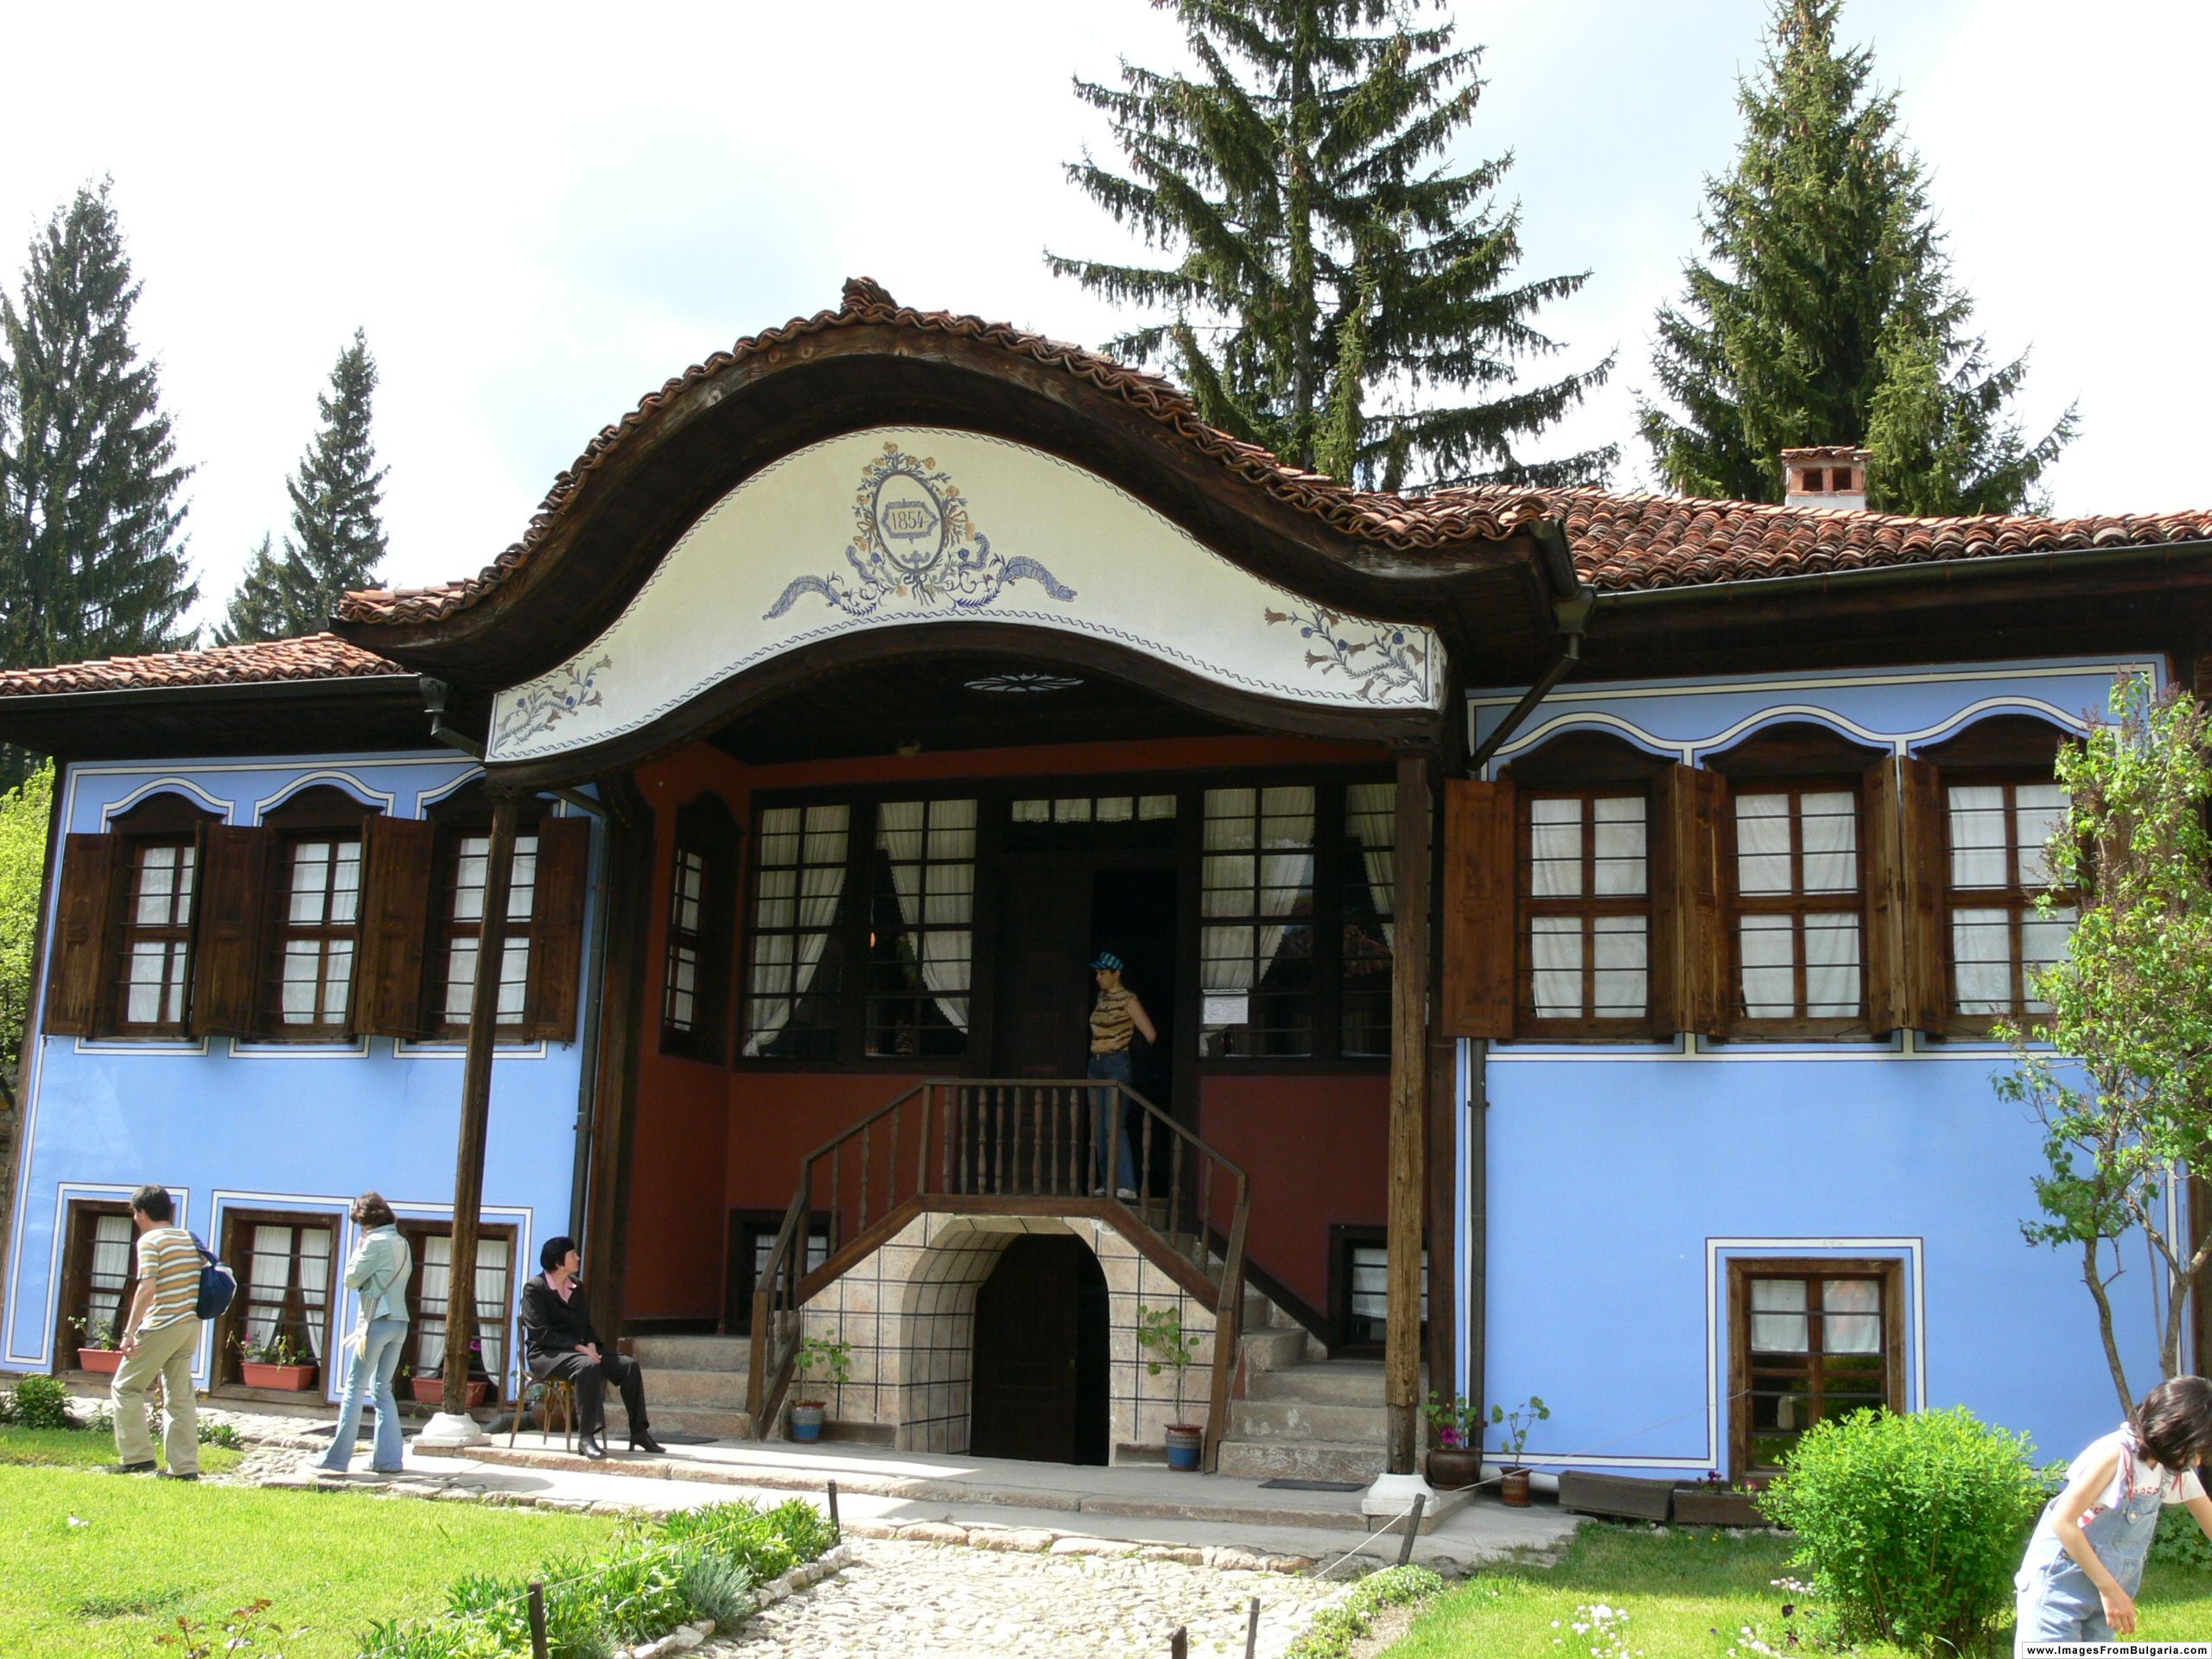 Lyutov House in Koprivshtitsa, Bulgaria - Author Nenko Lazarov